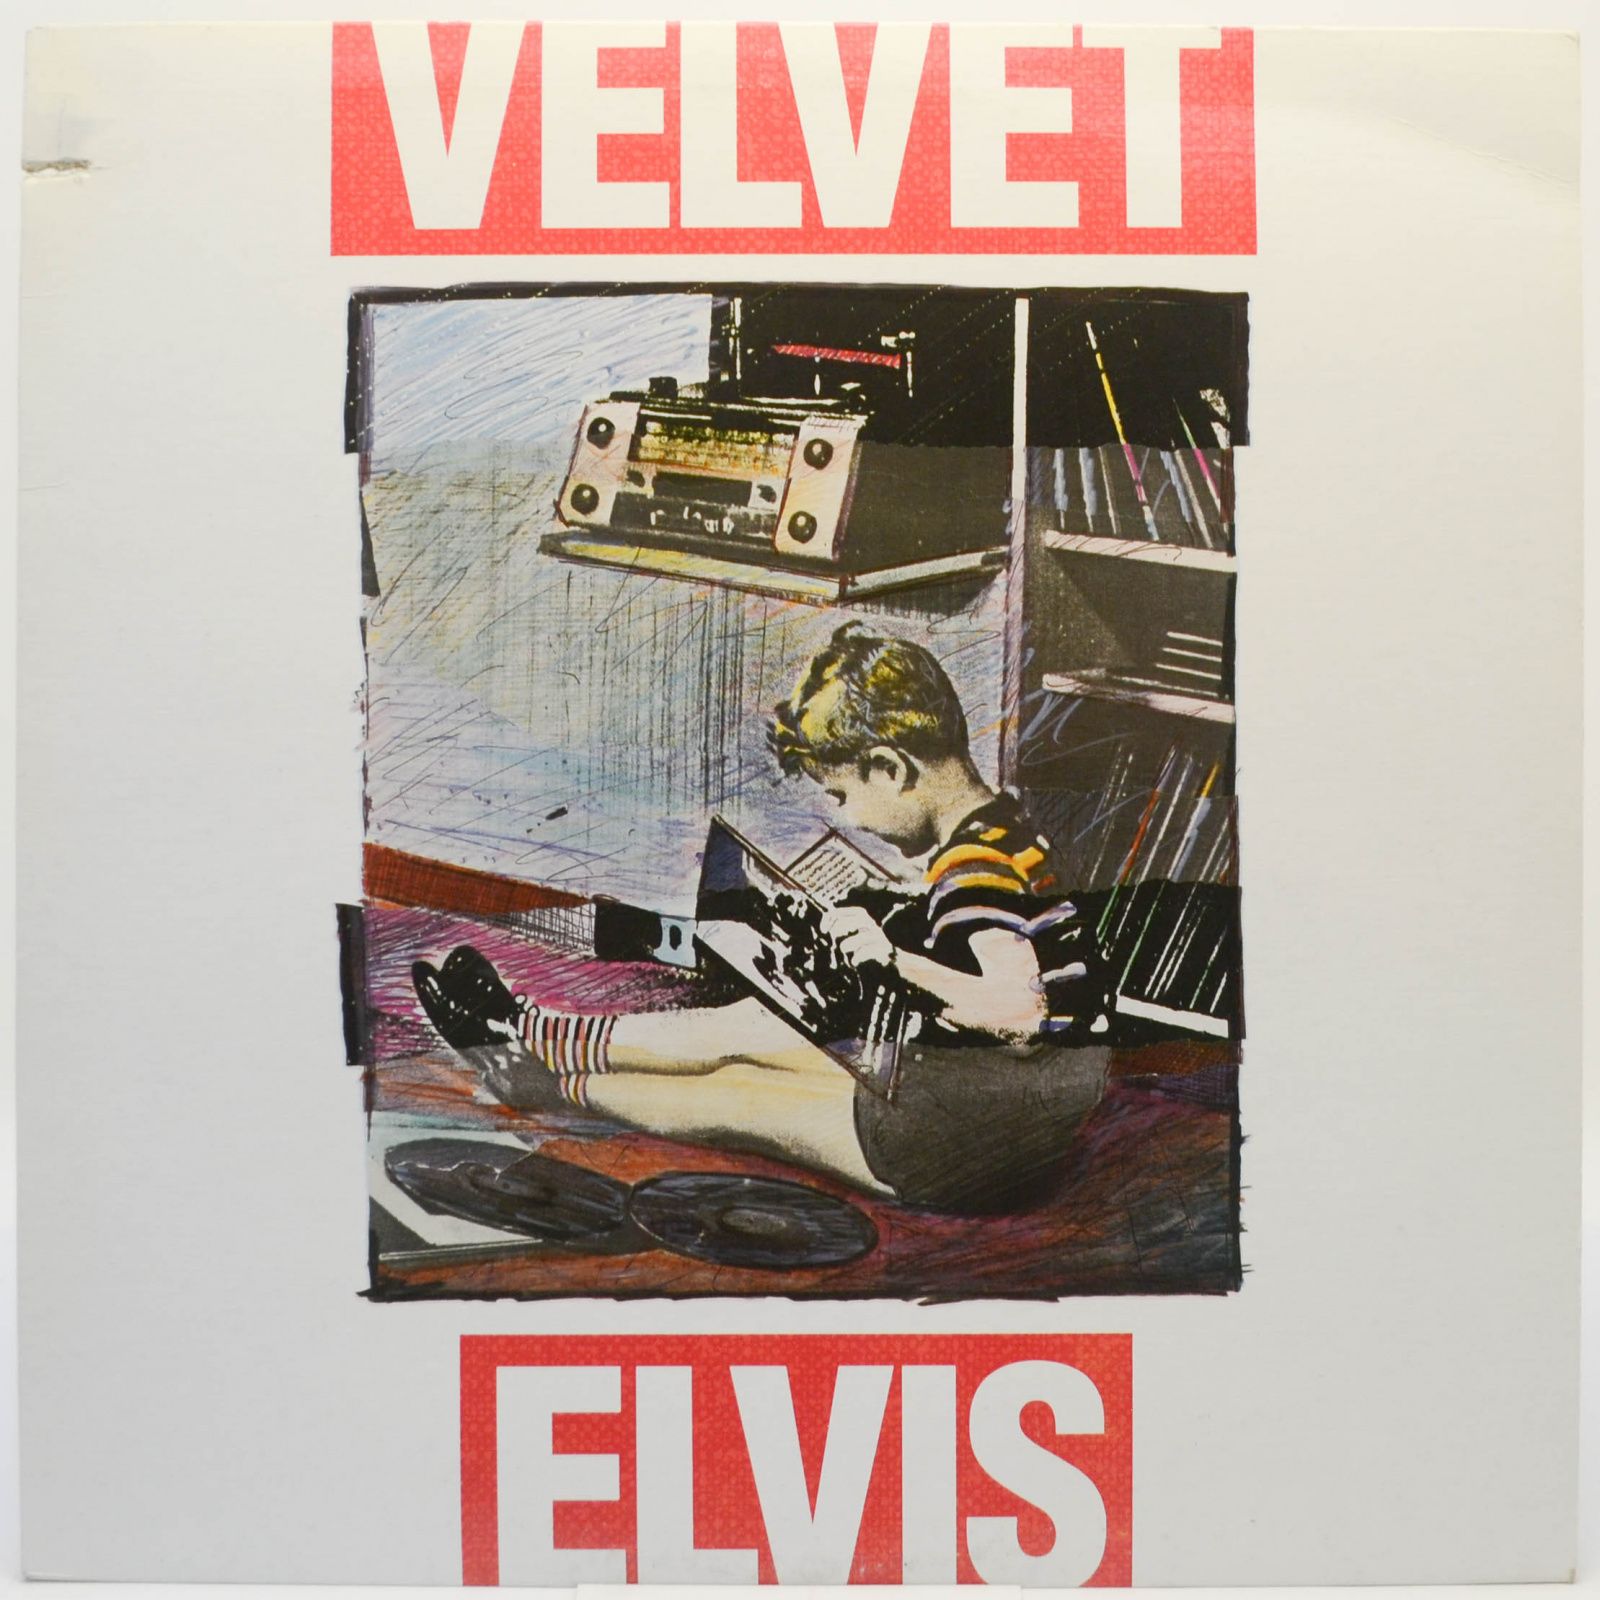 Velvet Elvis — Velvet Elvis, 1988